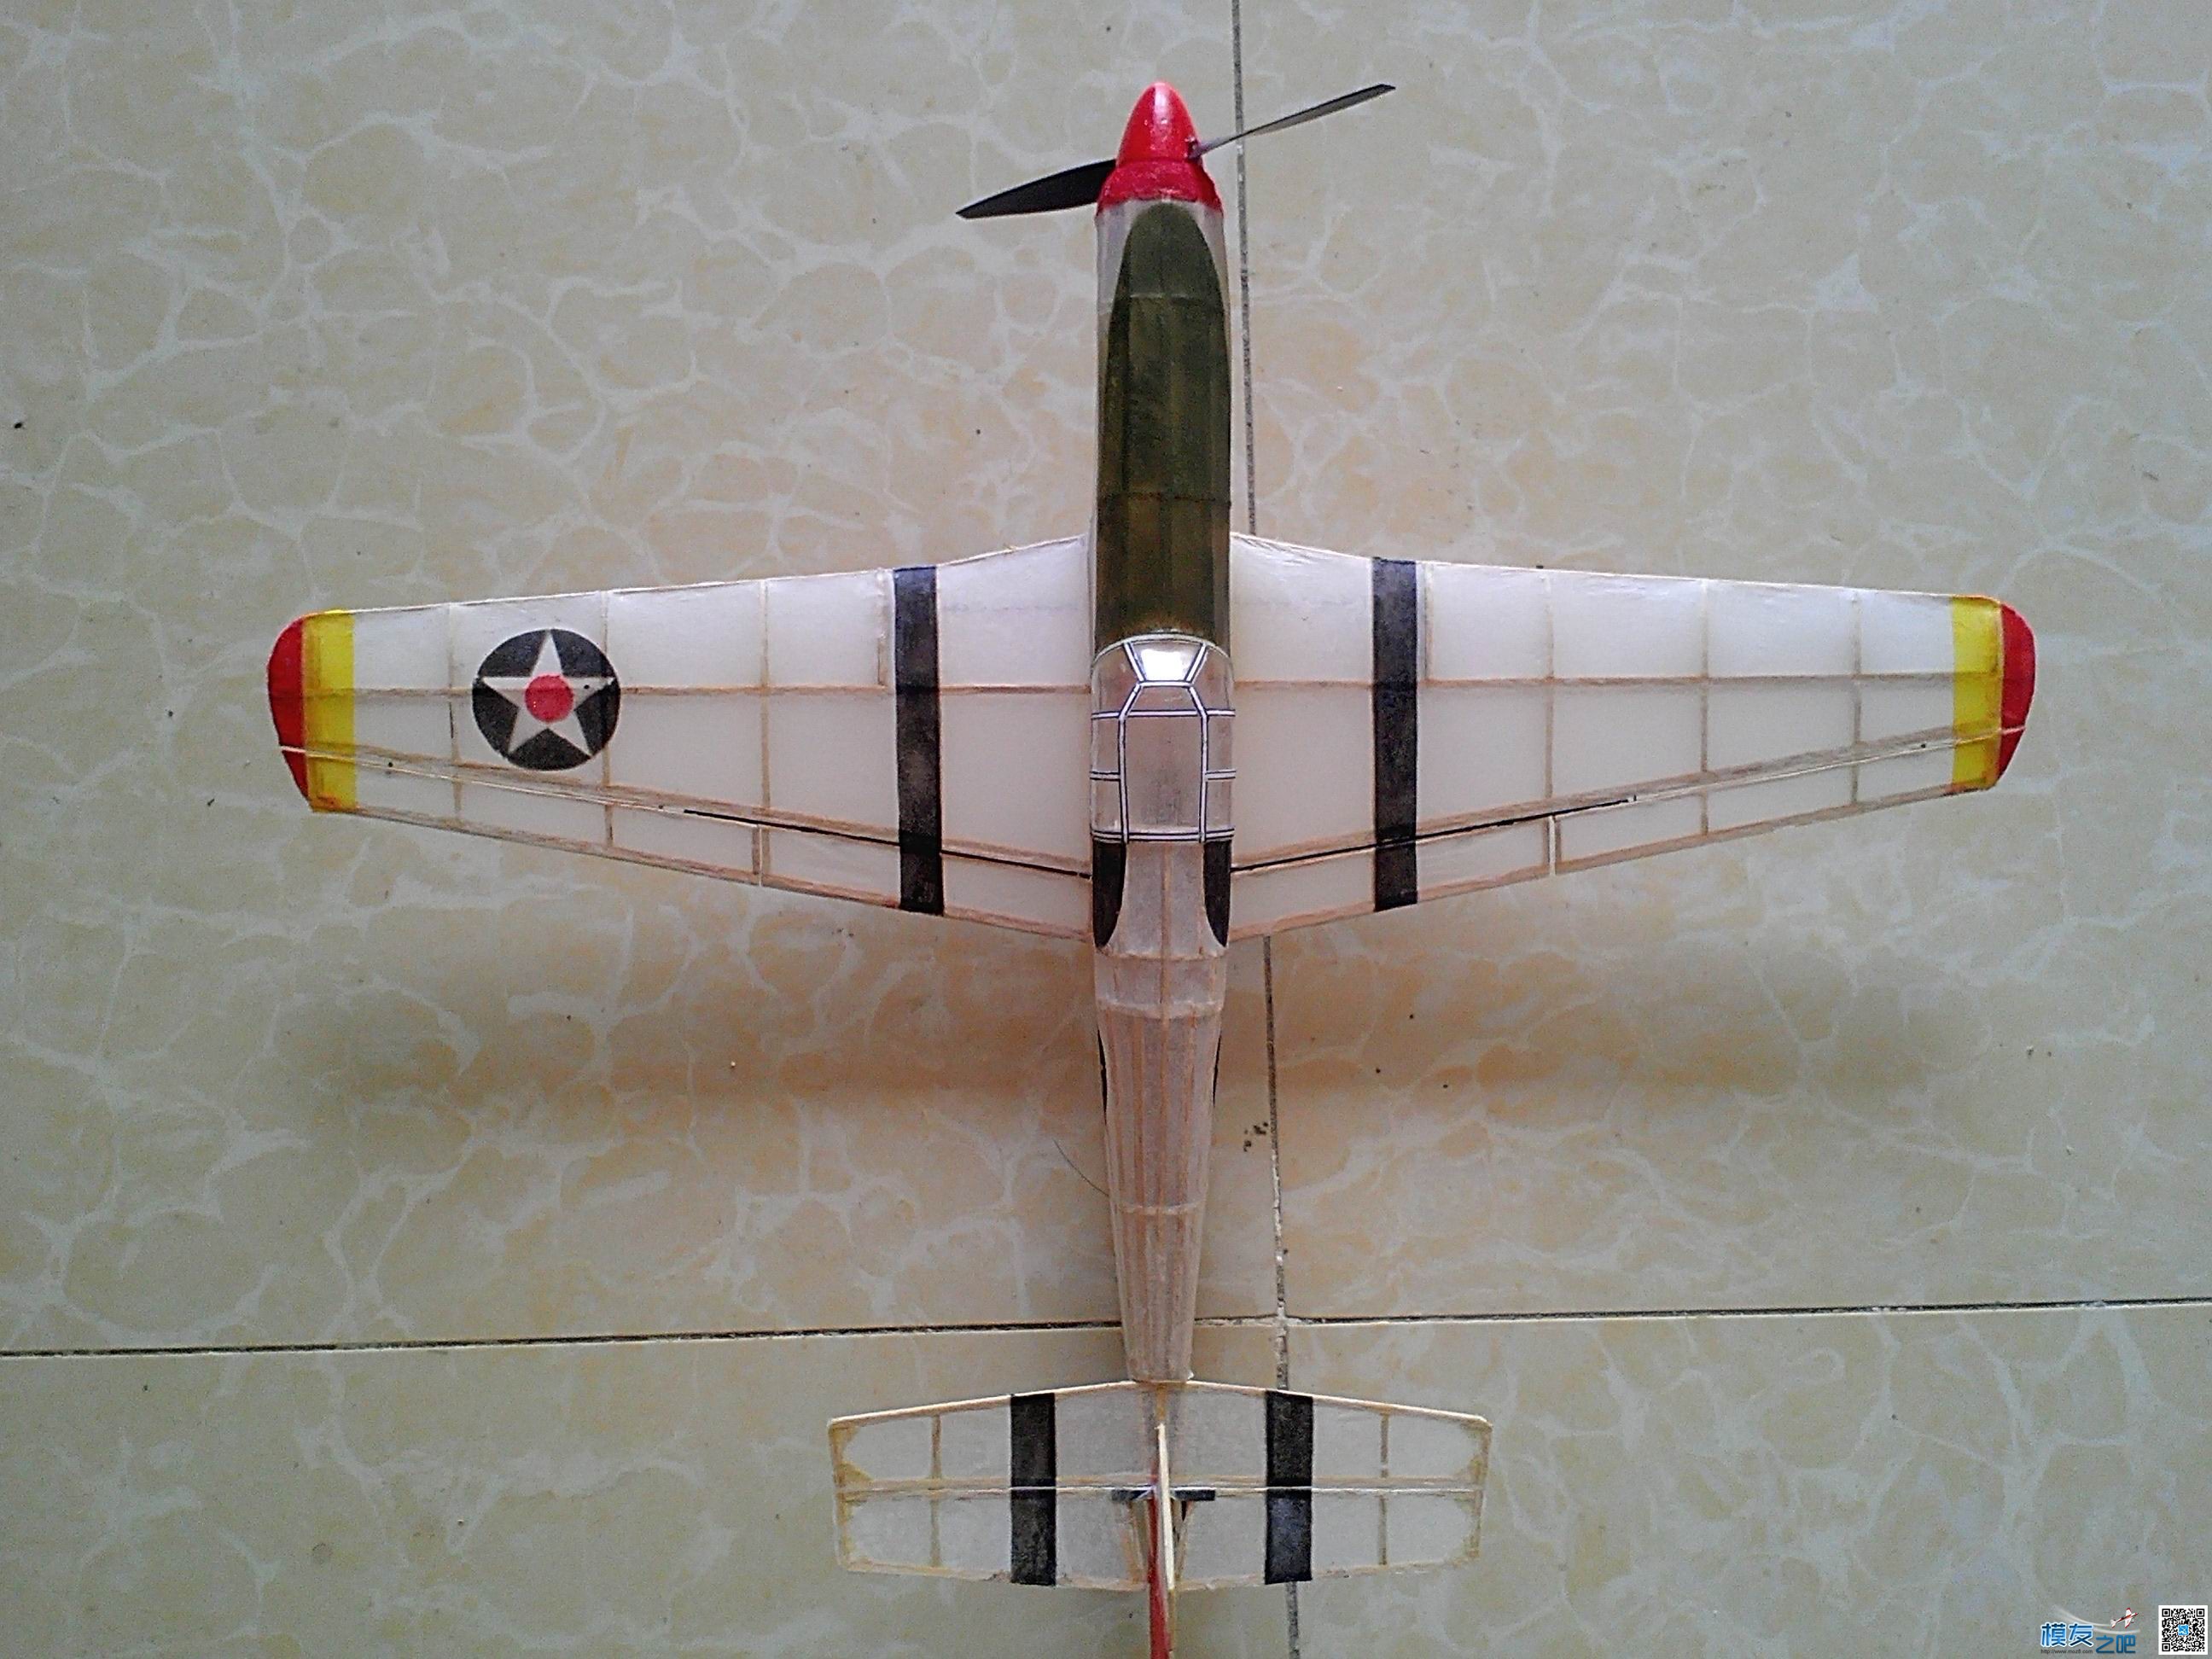 迷你轻木机野马P51a 固定翼,舵机,图纸,接收机 作者:飞翔的橡皮筋 1403 